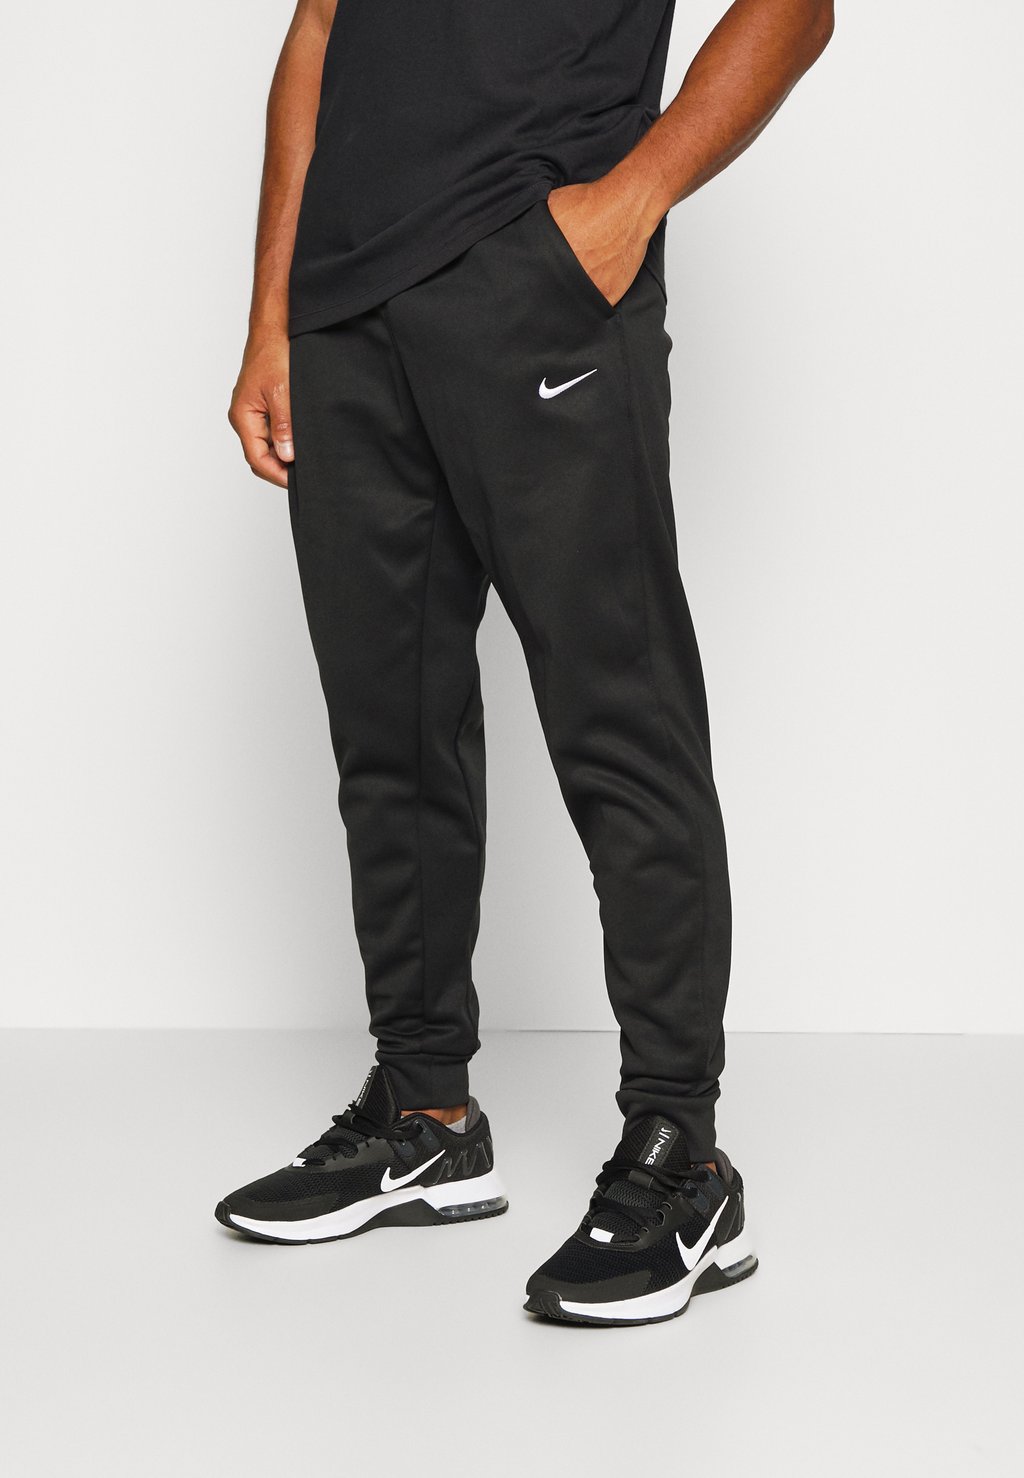 Спортивные брюки PANT TAPER Nike, черный/белый спортивные брюки pant taper nike deep jungle